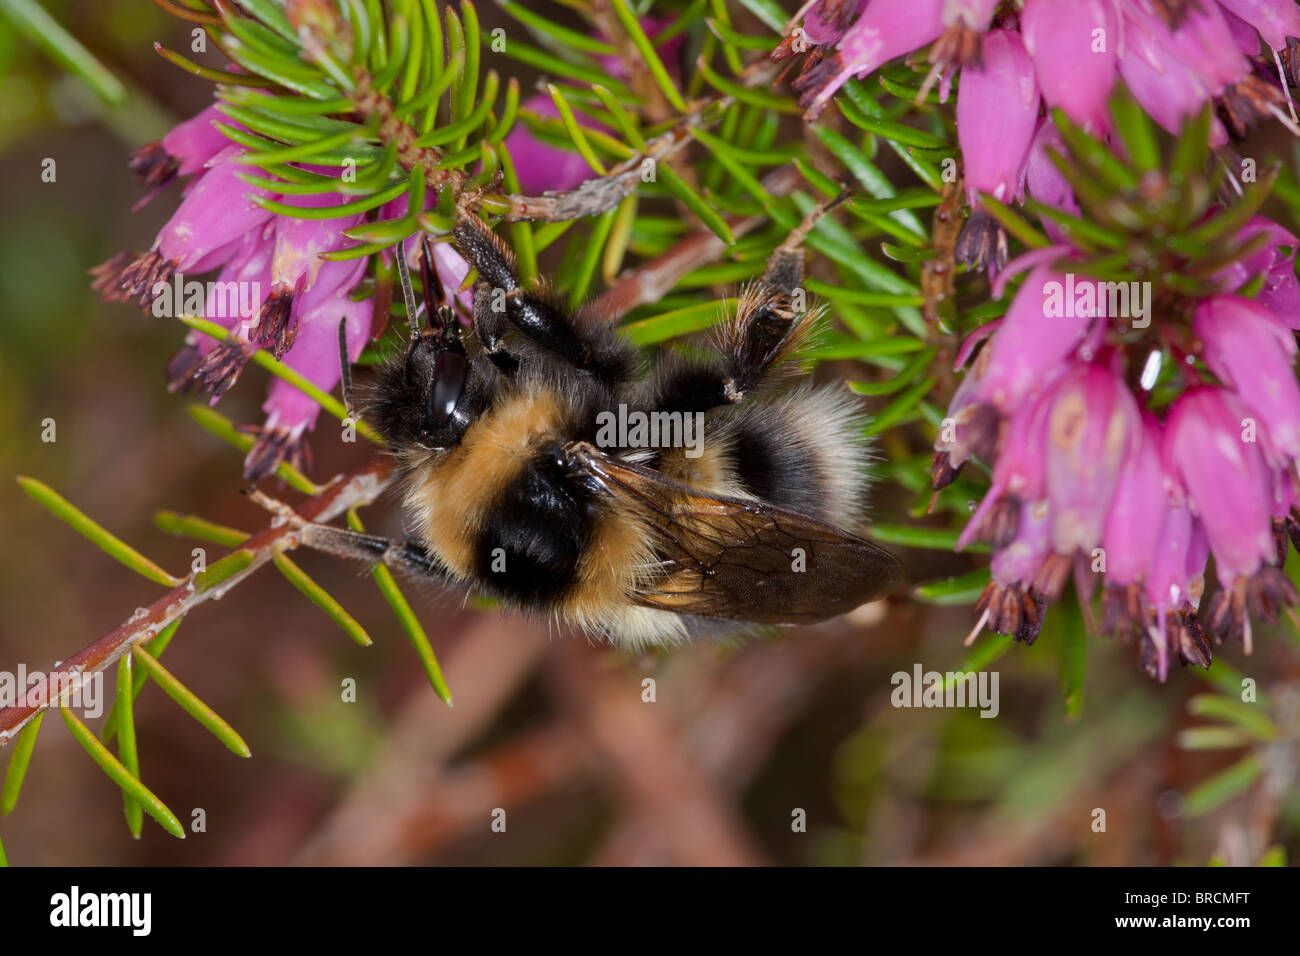 Heath Bumblebee, Bombus jonellus nectaring on Irish Heath variety in garden. Stock Photo